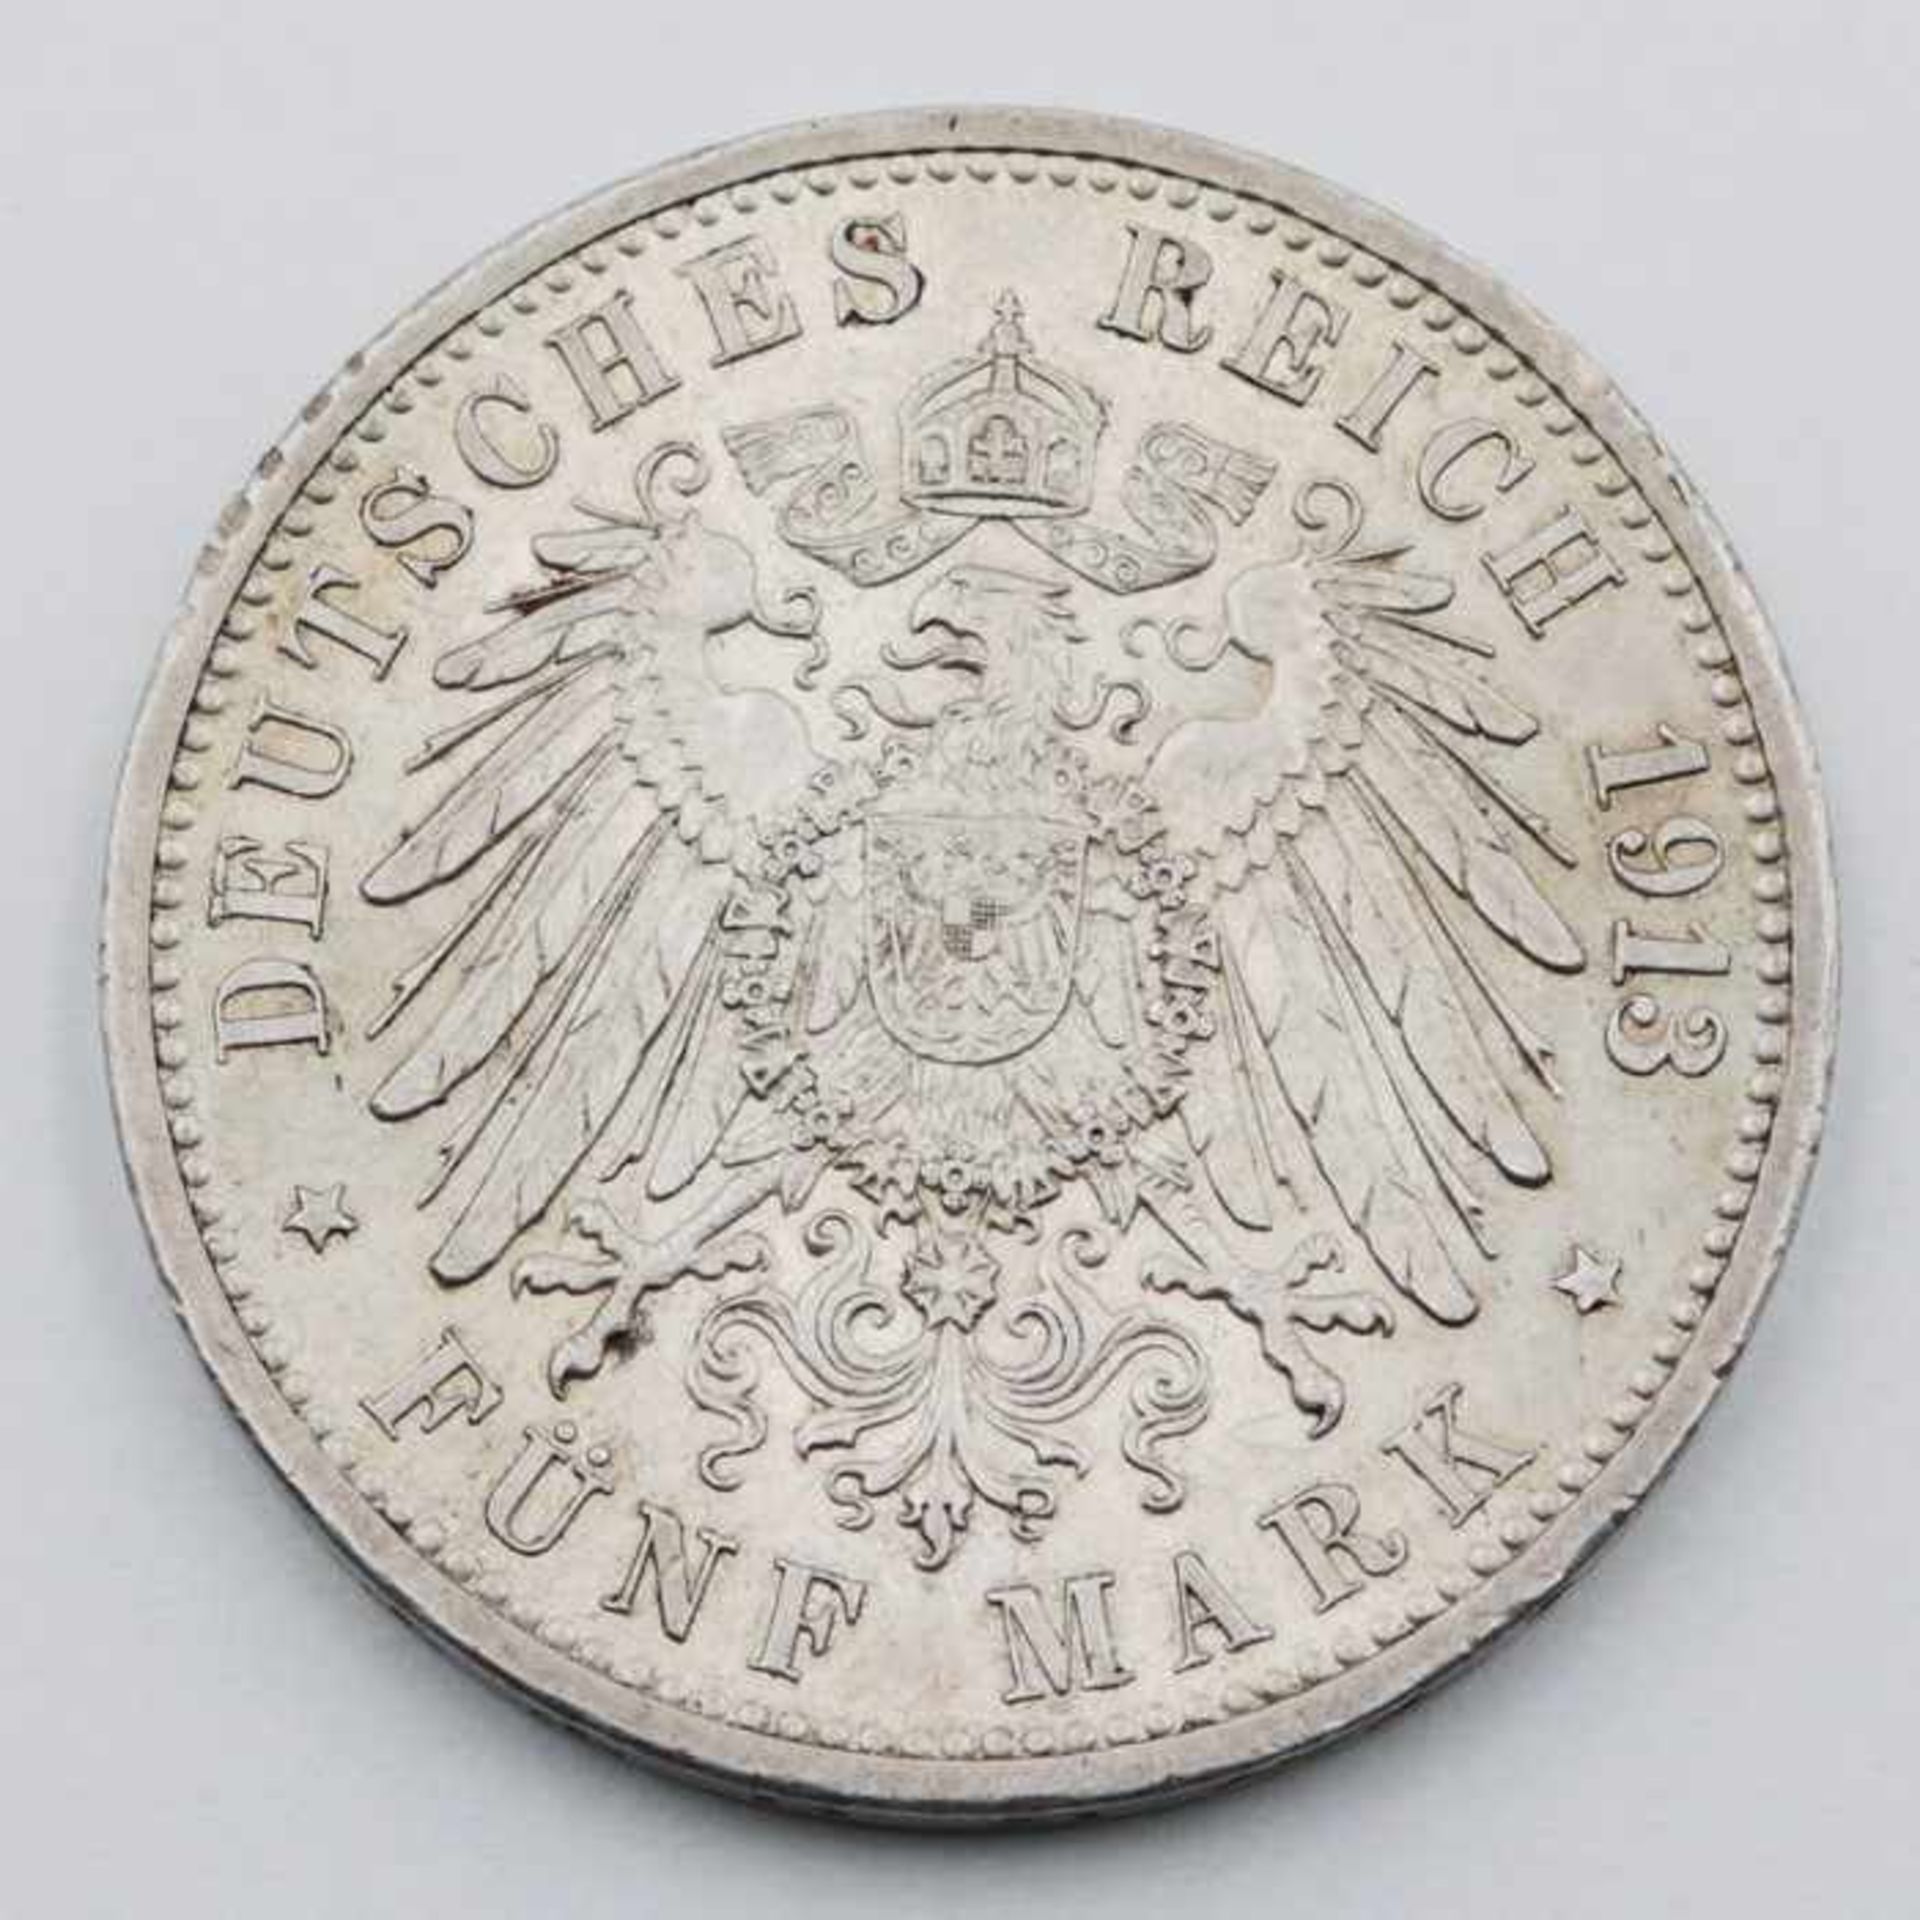 Deutsches ReichSilbermünze, 5 Mark,1913/G, Friedrich II Grossherzog von Baden , ss, Patina- - -20.00 - Bild 2 aus 2